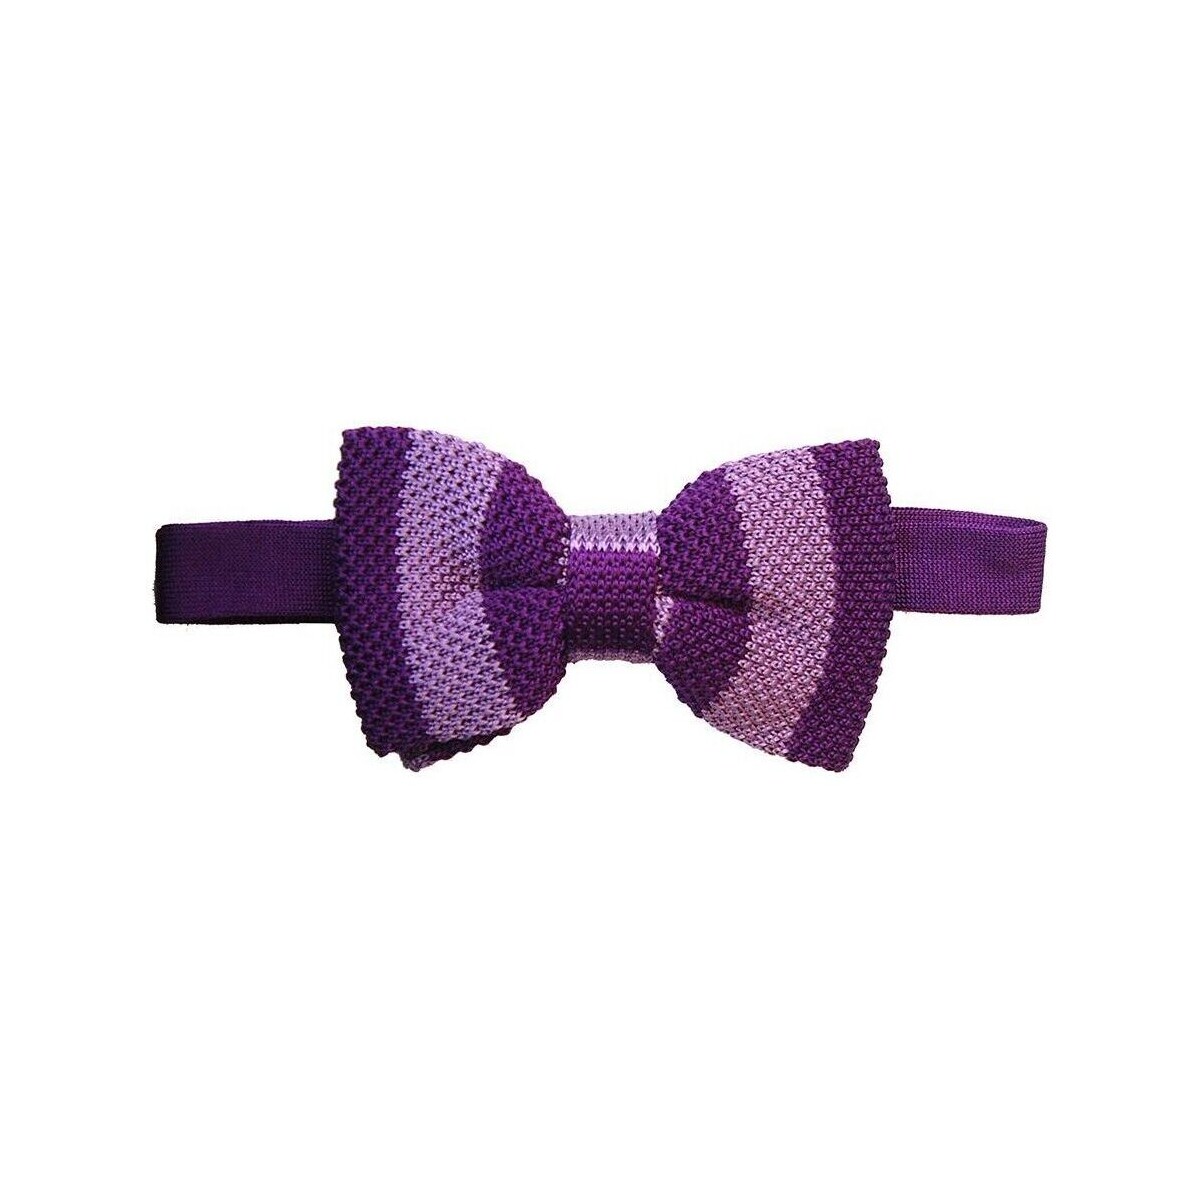 Vêtements Homme Cravates et accessoires Tyler & Tyler Noeud papillon tricot Gentleman club Violet